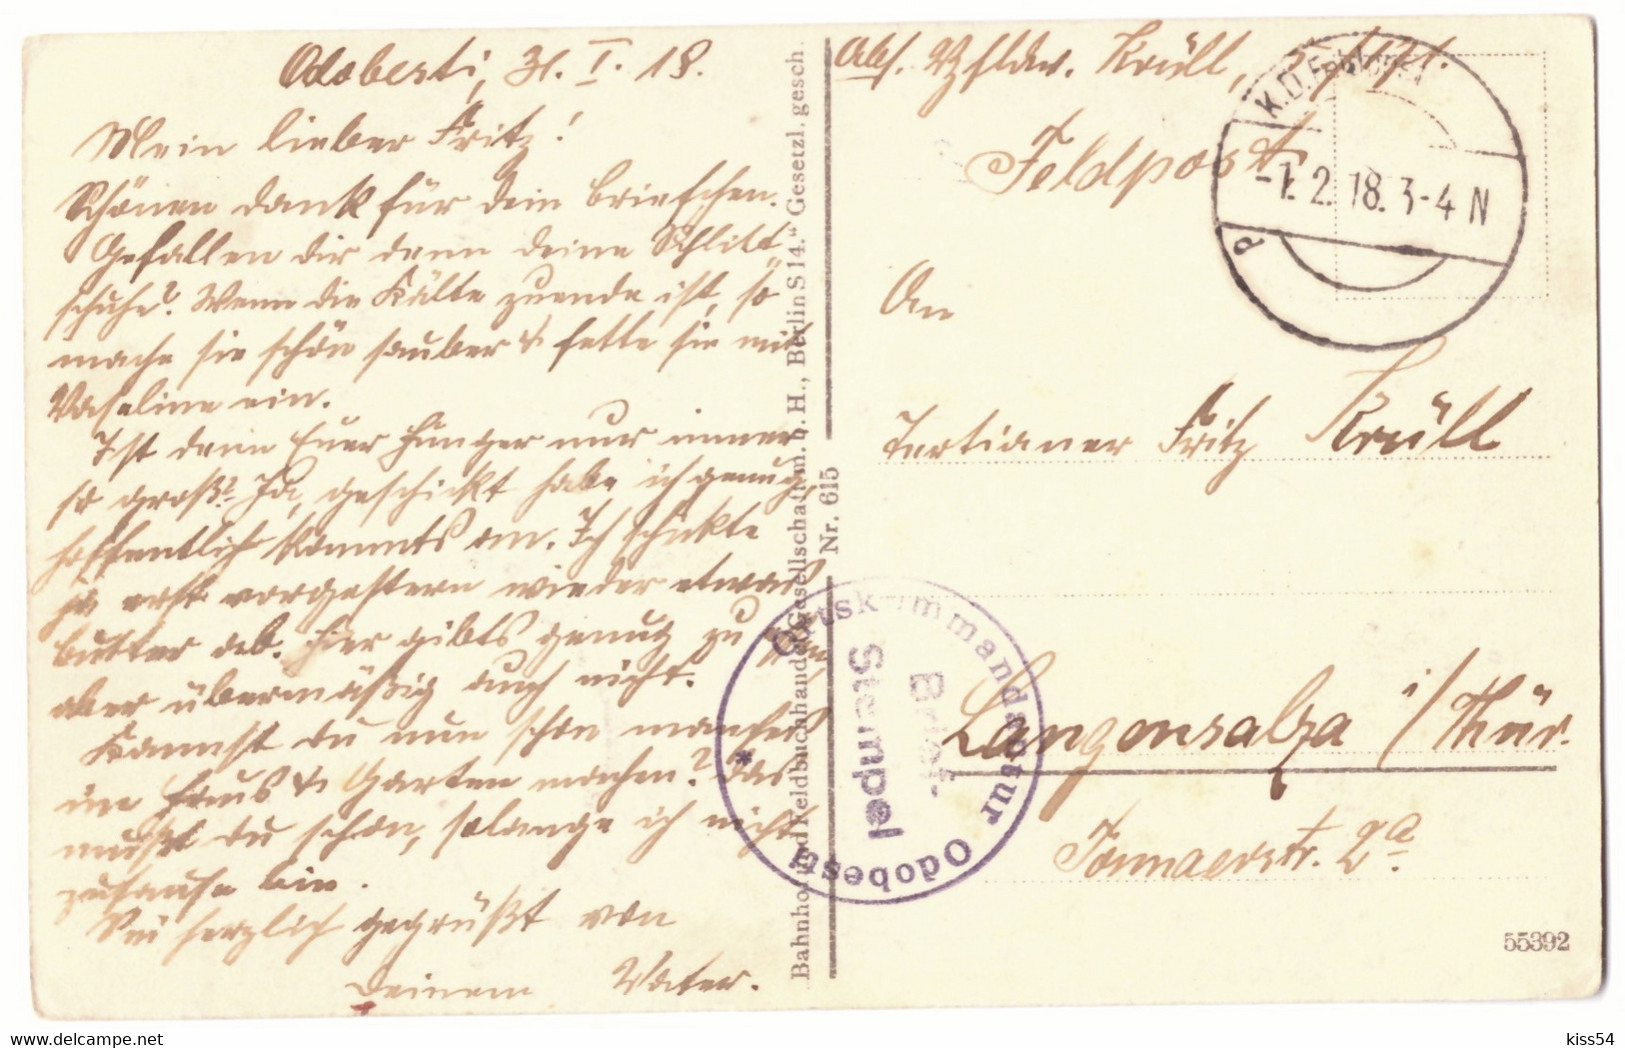 RO 87 - 21143 HARJA, Bacau, Ethnic Family, Romania - Old Postcard, CENSOR - Used - 1918 - Roemenië